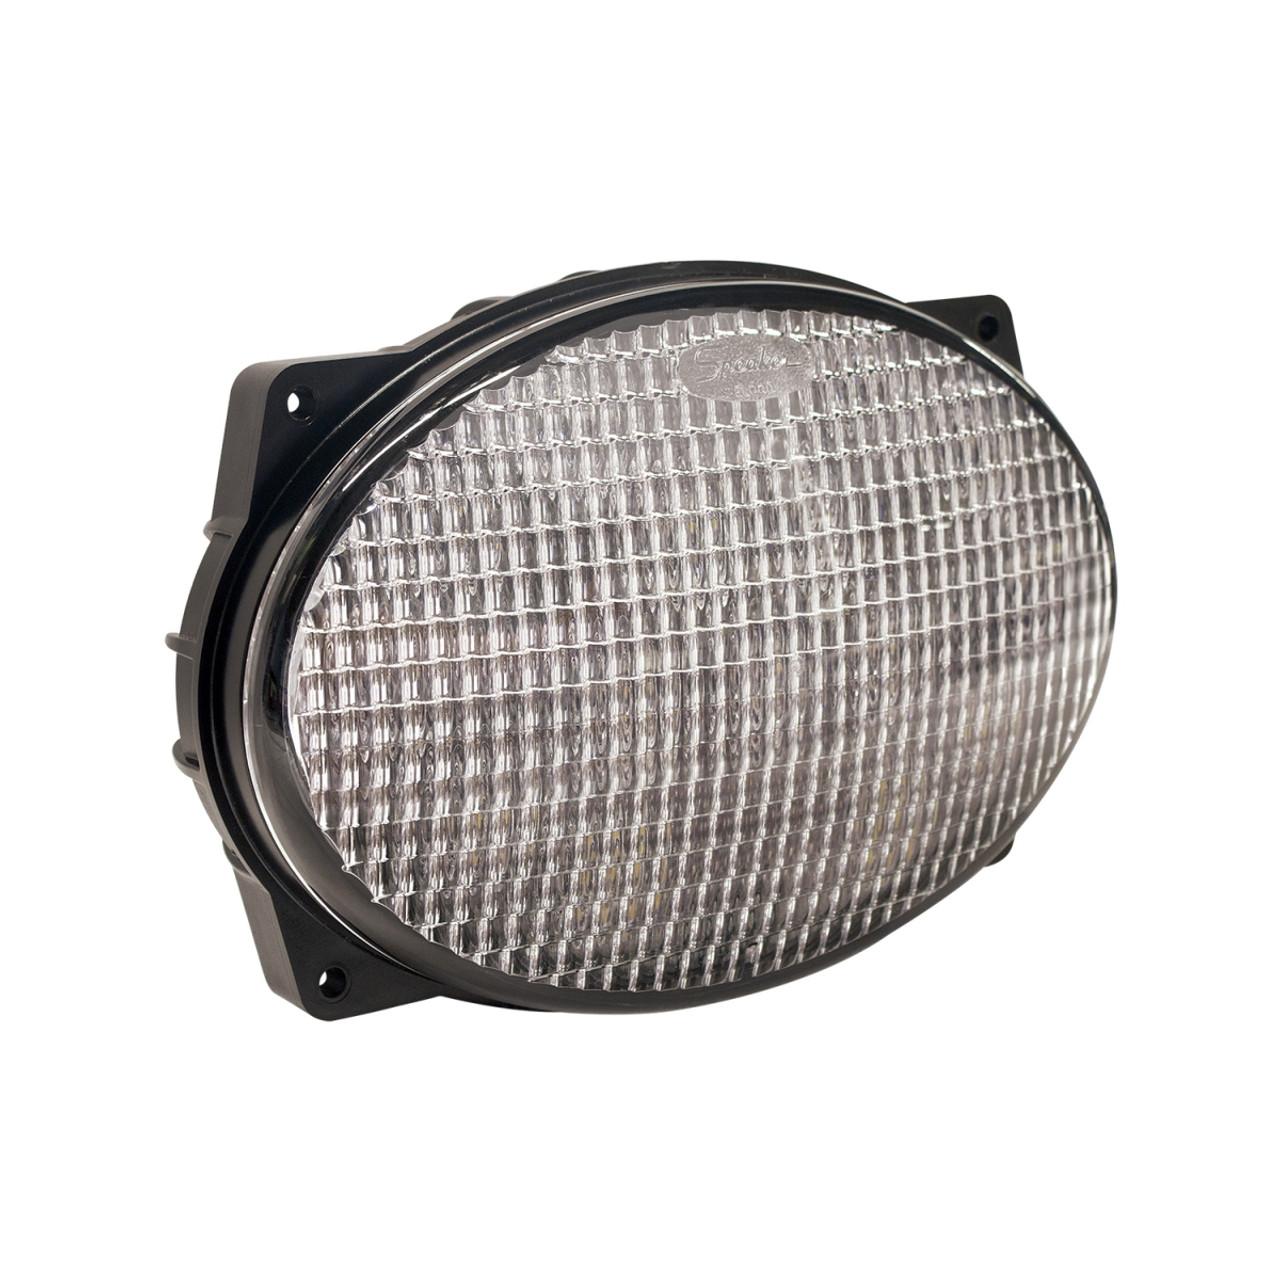 J.W. Speaker 12-24V LED Oval Work Light & Panel Mount - Model 7251 XD